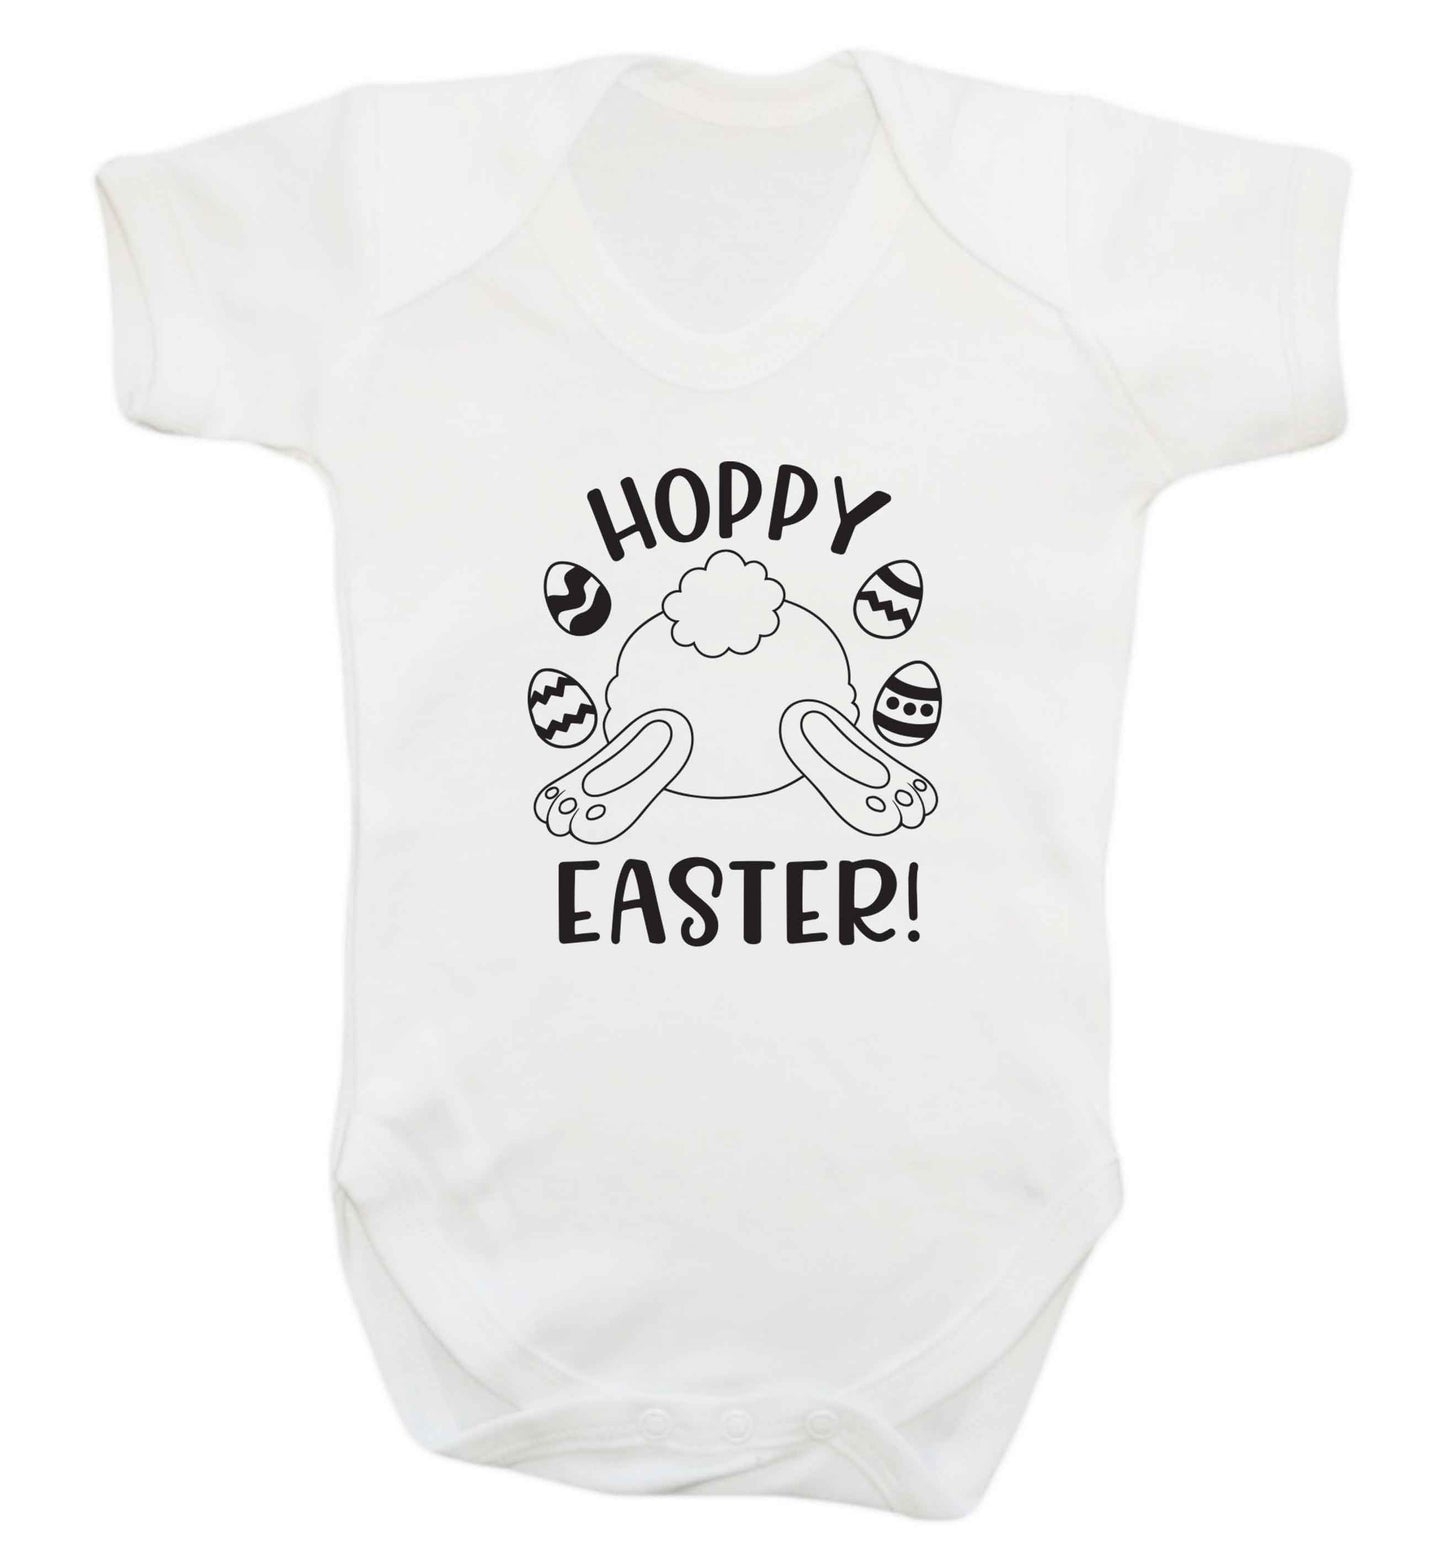 Hoppy Easter baby vest white 18-24 months